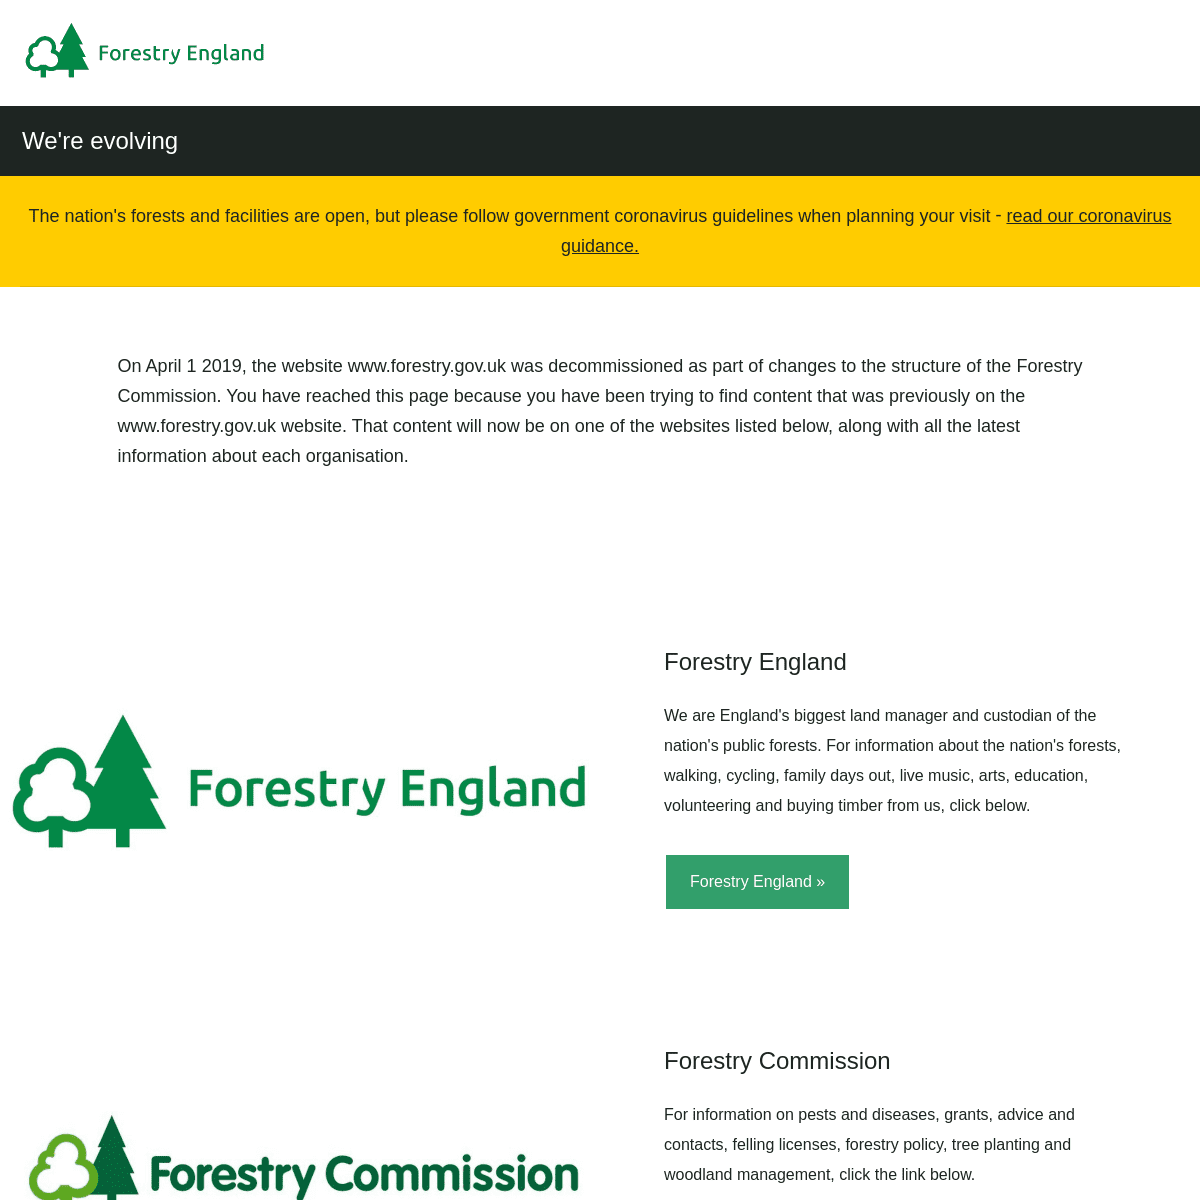 A complete backup of https://forestry.gov.uk